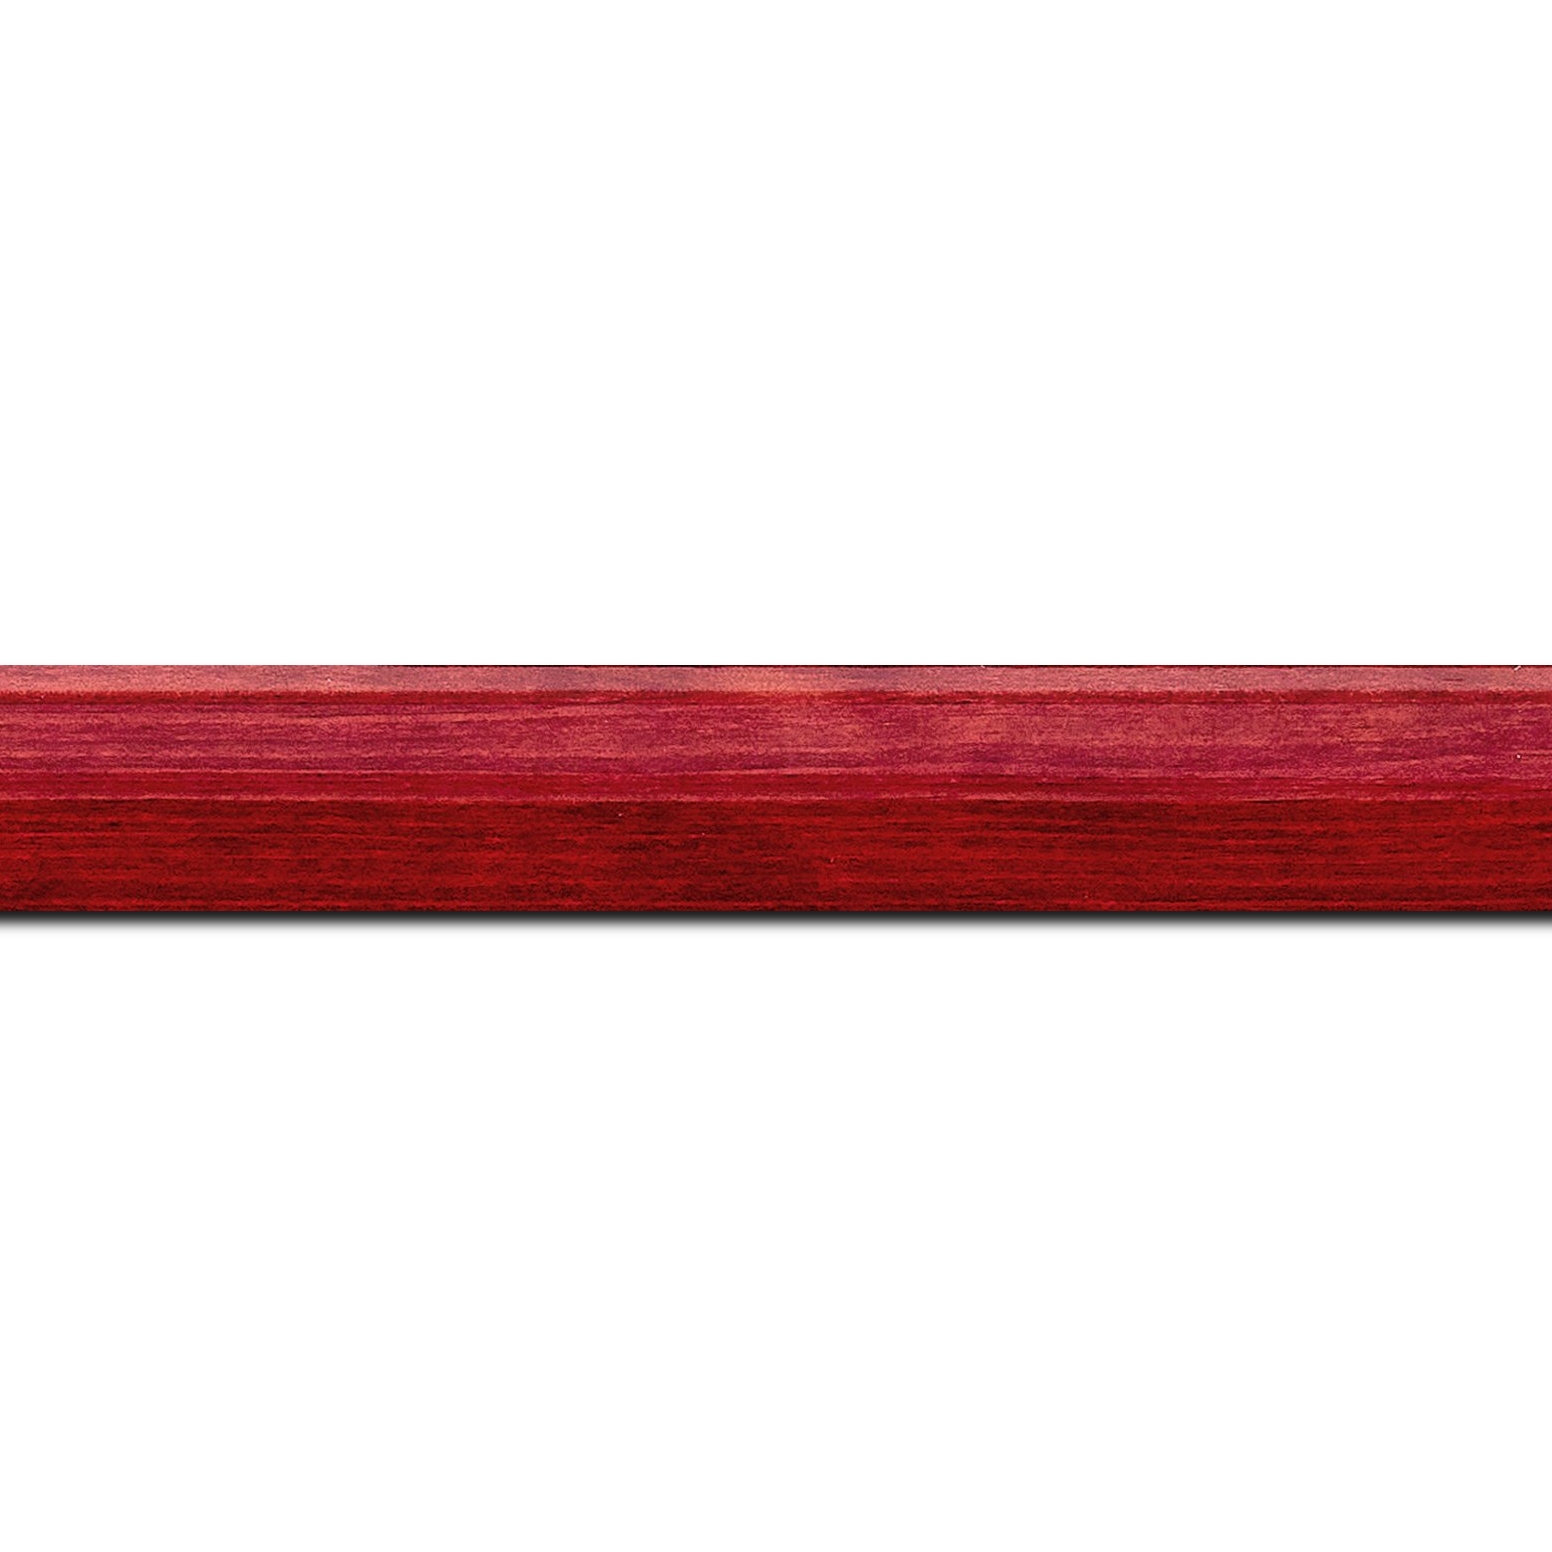 Pack par 12m, bois profil arrondi en pente plongeant largeur 2.4cm couleur rouge finition vernis brillant,veine du bois  apparent (pin) ,  (longueur baguette pouvant varier entre 2.40m et 3m selon arrivage des bois)